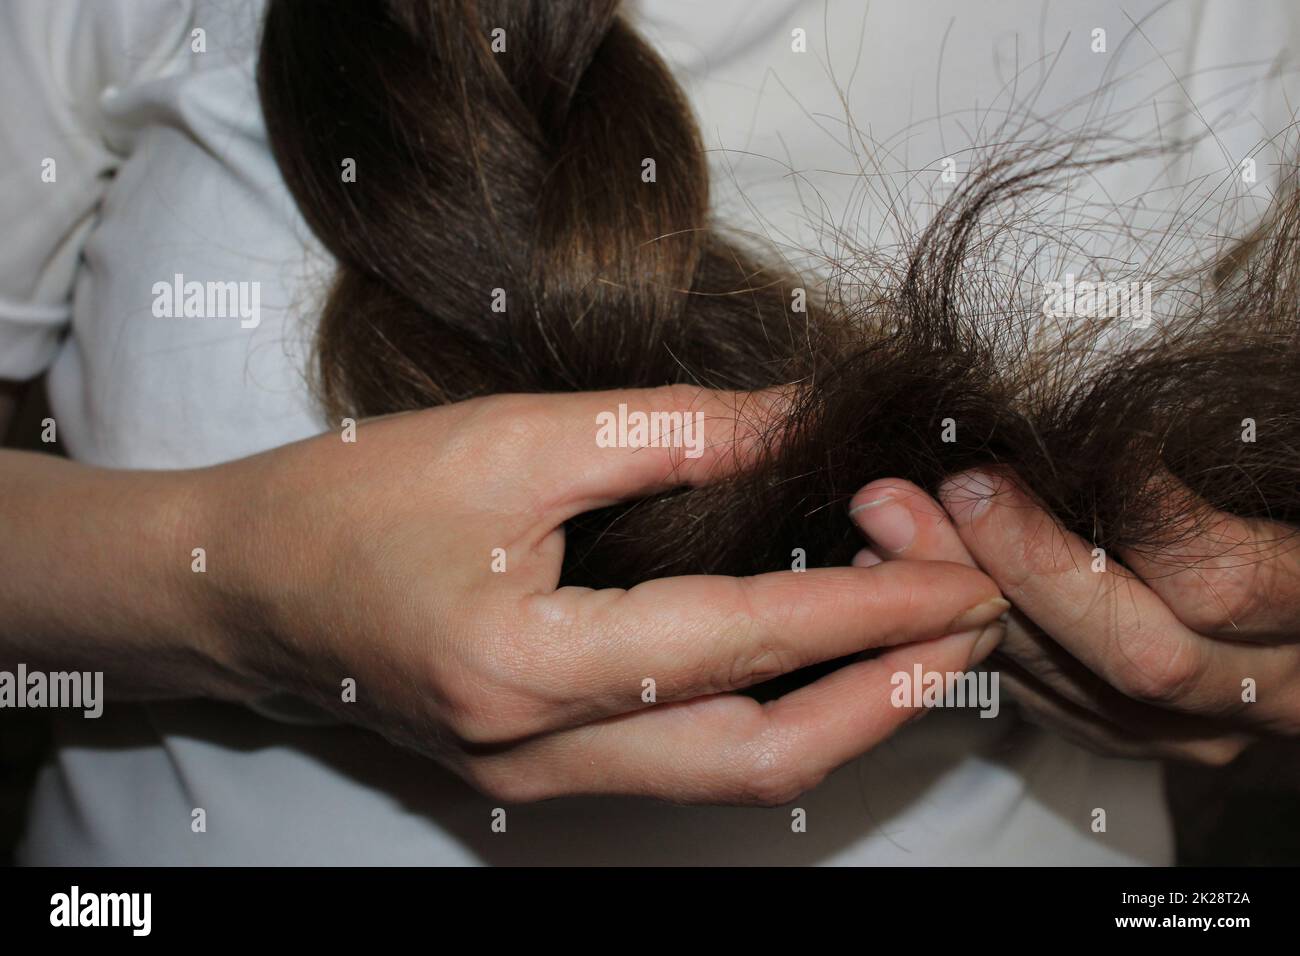 Una ragazza con lunghi capelli scuri intrecciati tiene in mano le estremità dei capelli danneggiati. Problema di perdita dei capelli. Foto Stock